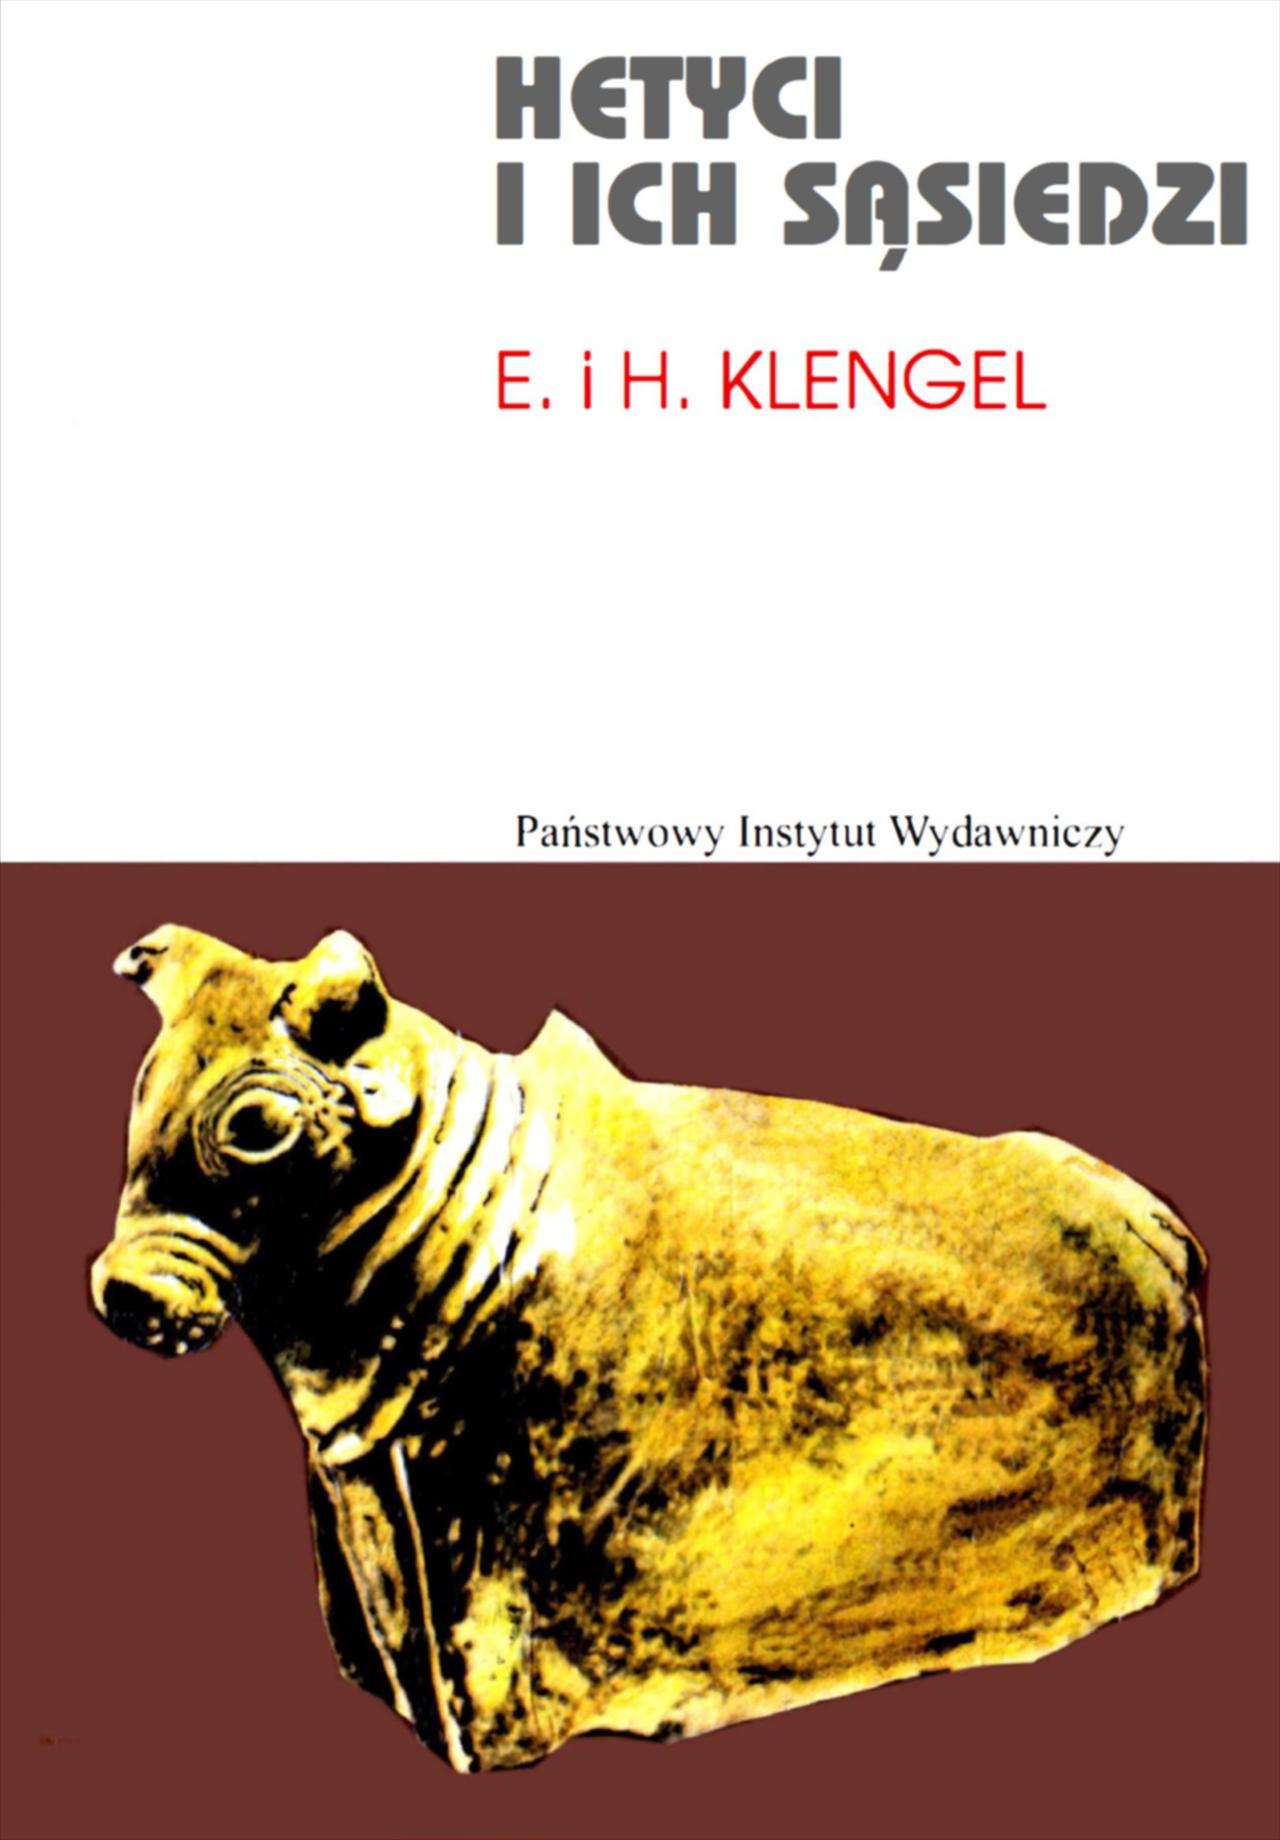 Historia powszechna II - H-Klengel E.H.-Hetyci i ich sąsiedzi.jpg